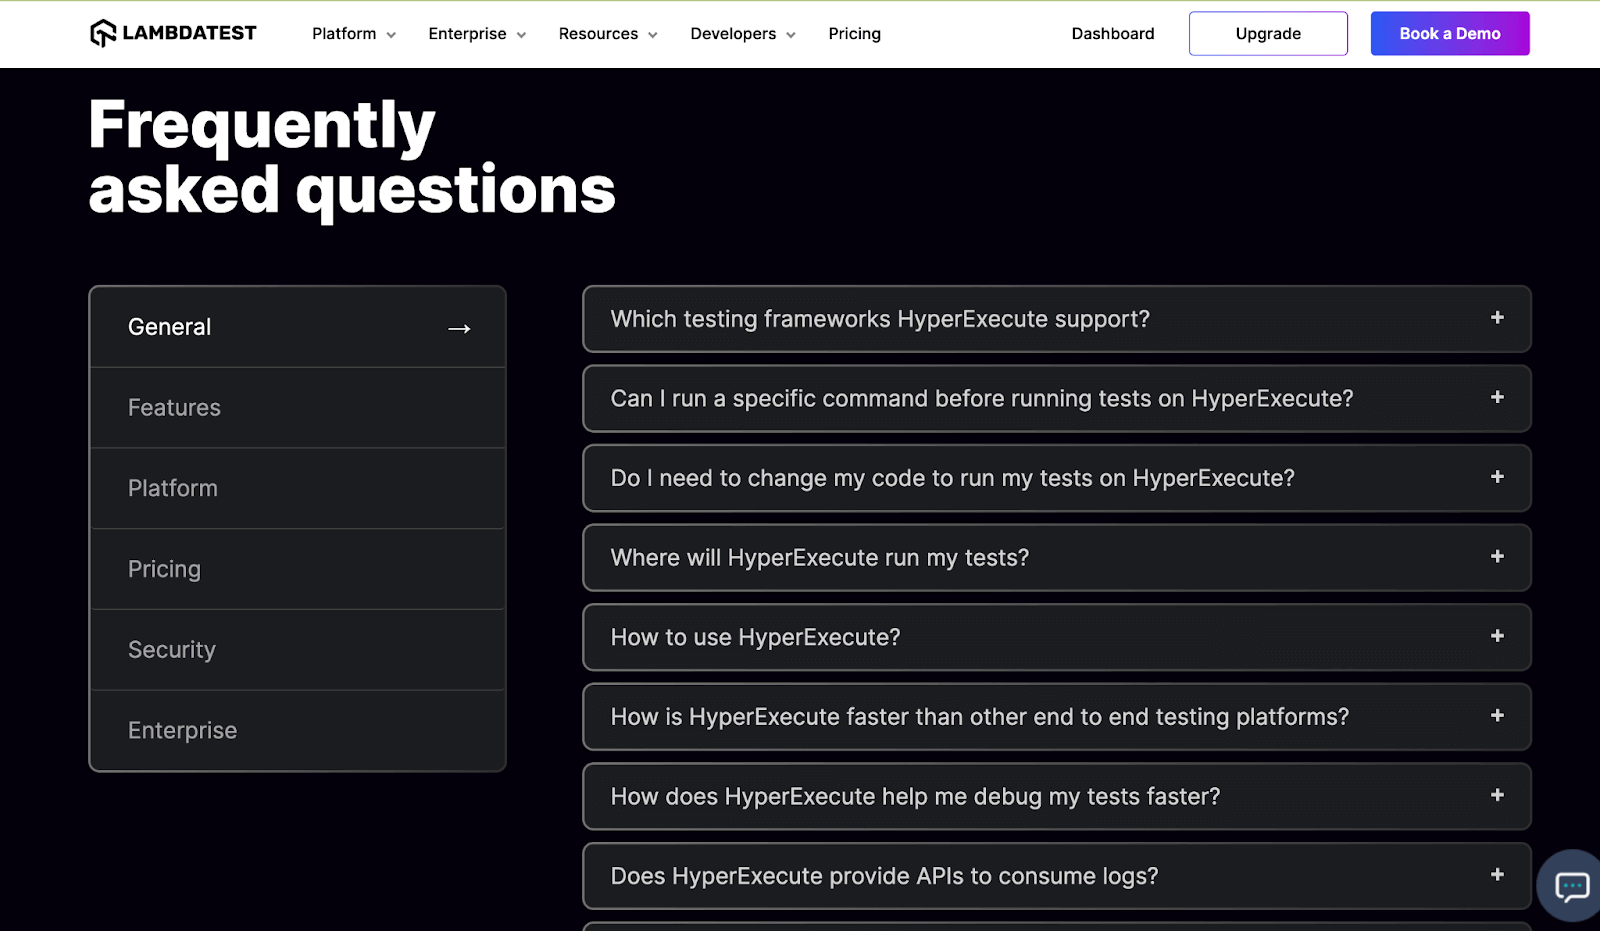 LambdaTest lists the FAQ